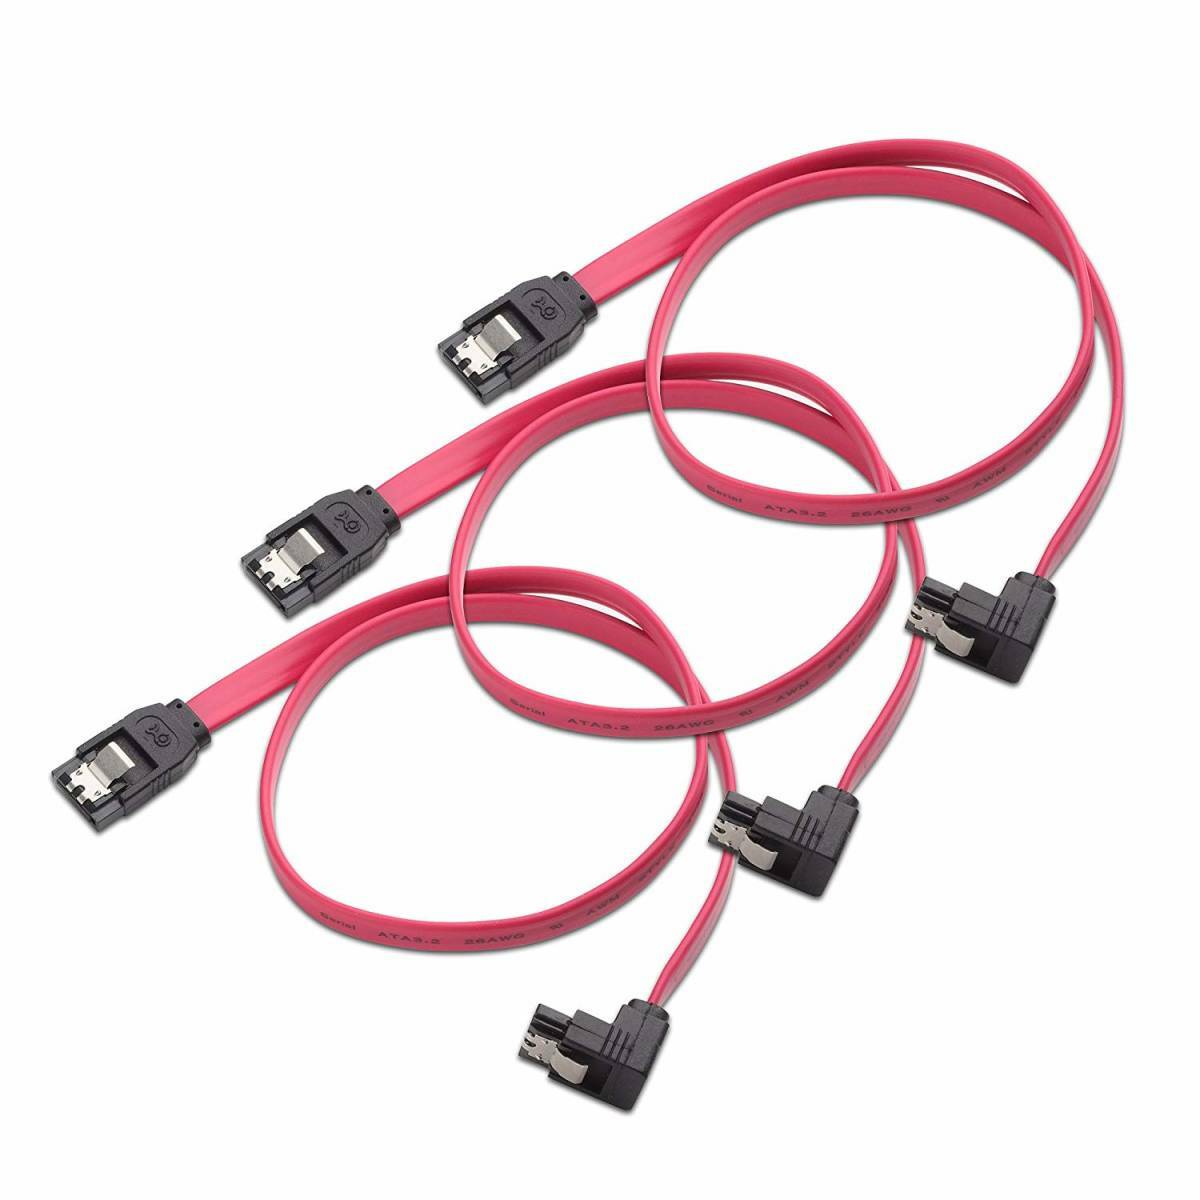 送料無料 45CM 赤 3本セット SATA ケーブル L型 Sata3 シリアル ATA3.0 ケーブル 6 Gbps対応 SSDとHDD増設